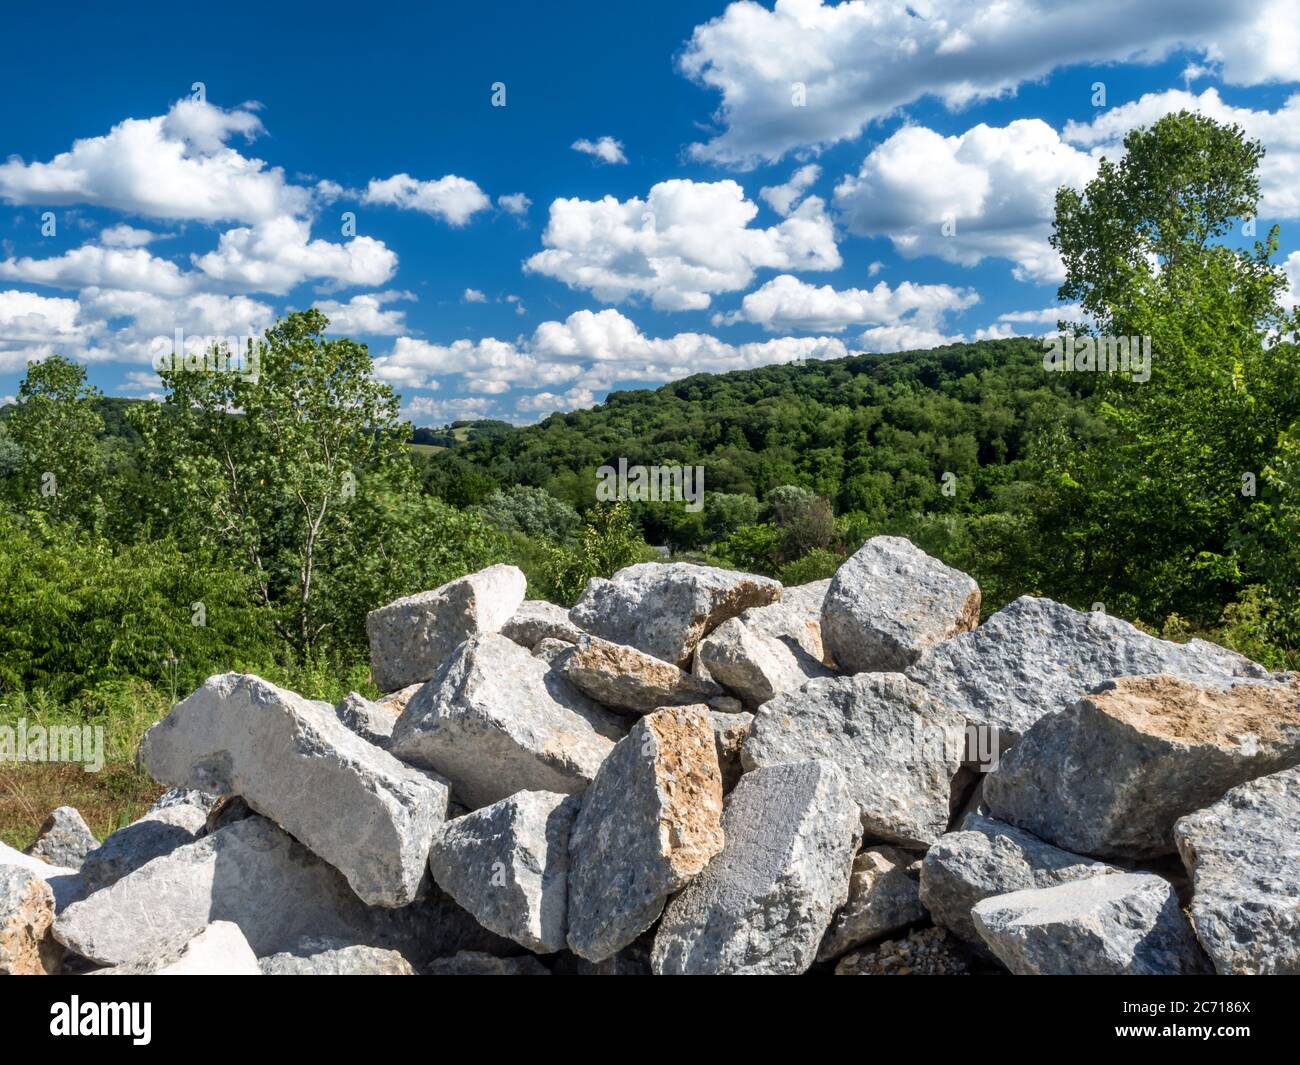 Paesaggio scena nella contea di Washington del sud-ovest della Pennsylvania vicino Pittsburgh con massi accatastati in primo piano e alberi verdi e un b luminoso Foto Stock